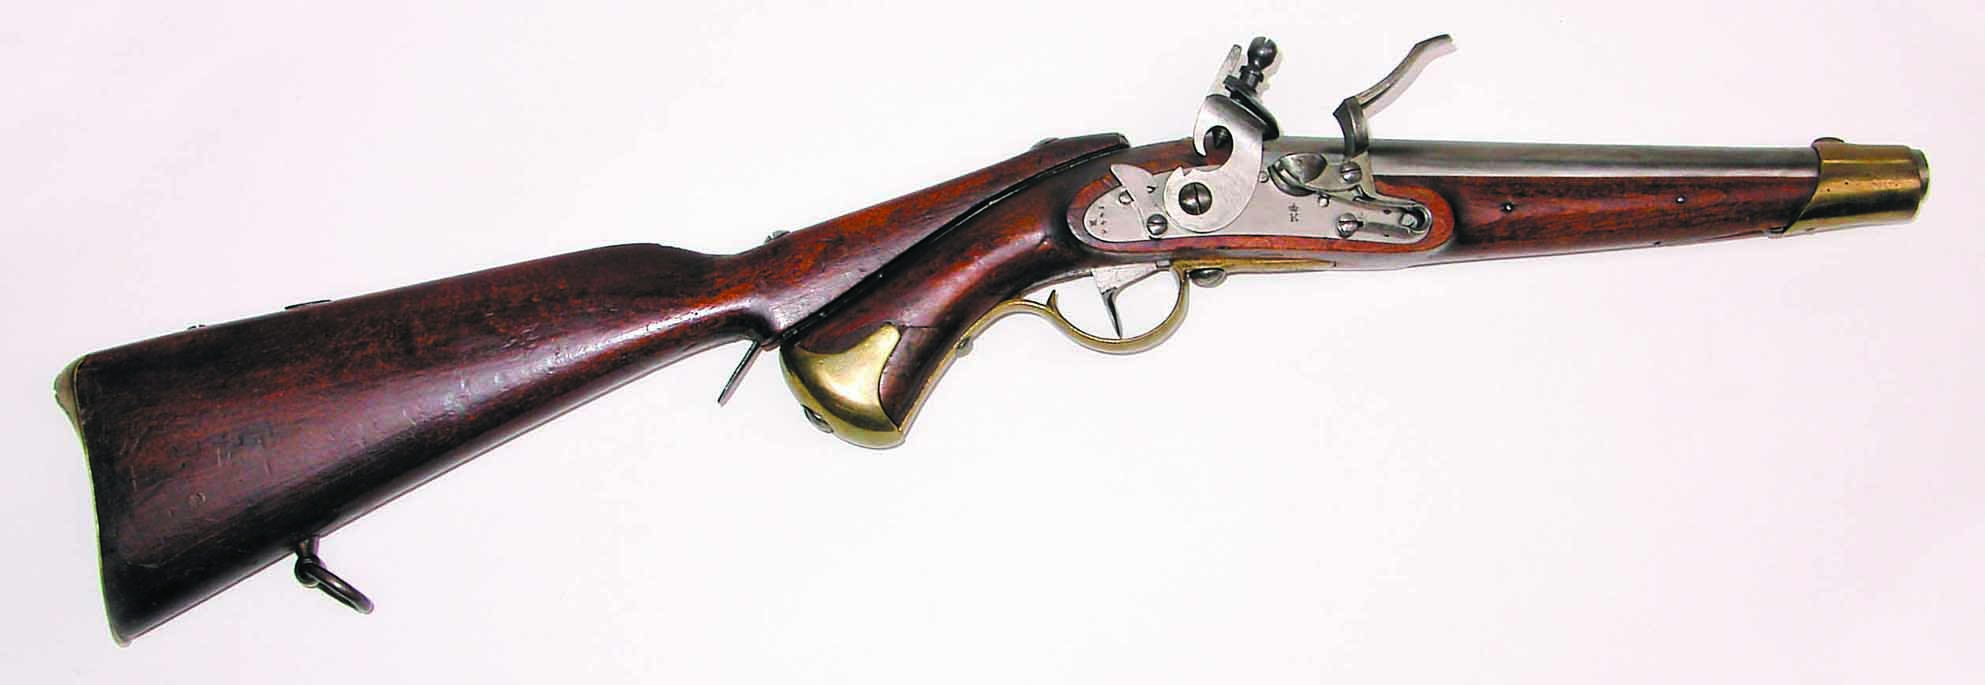 ./guns/pistol/bilder/Pistol-Kongsberg-M1834-1446-1.jpg